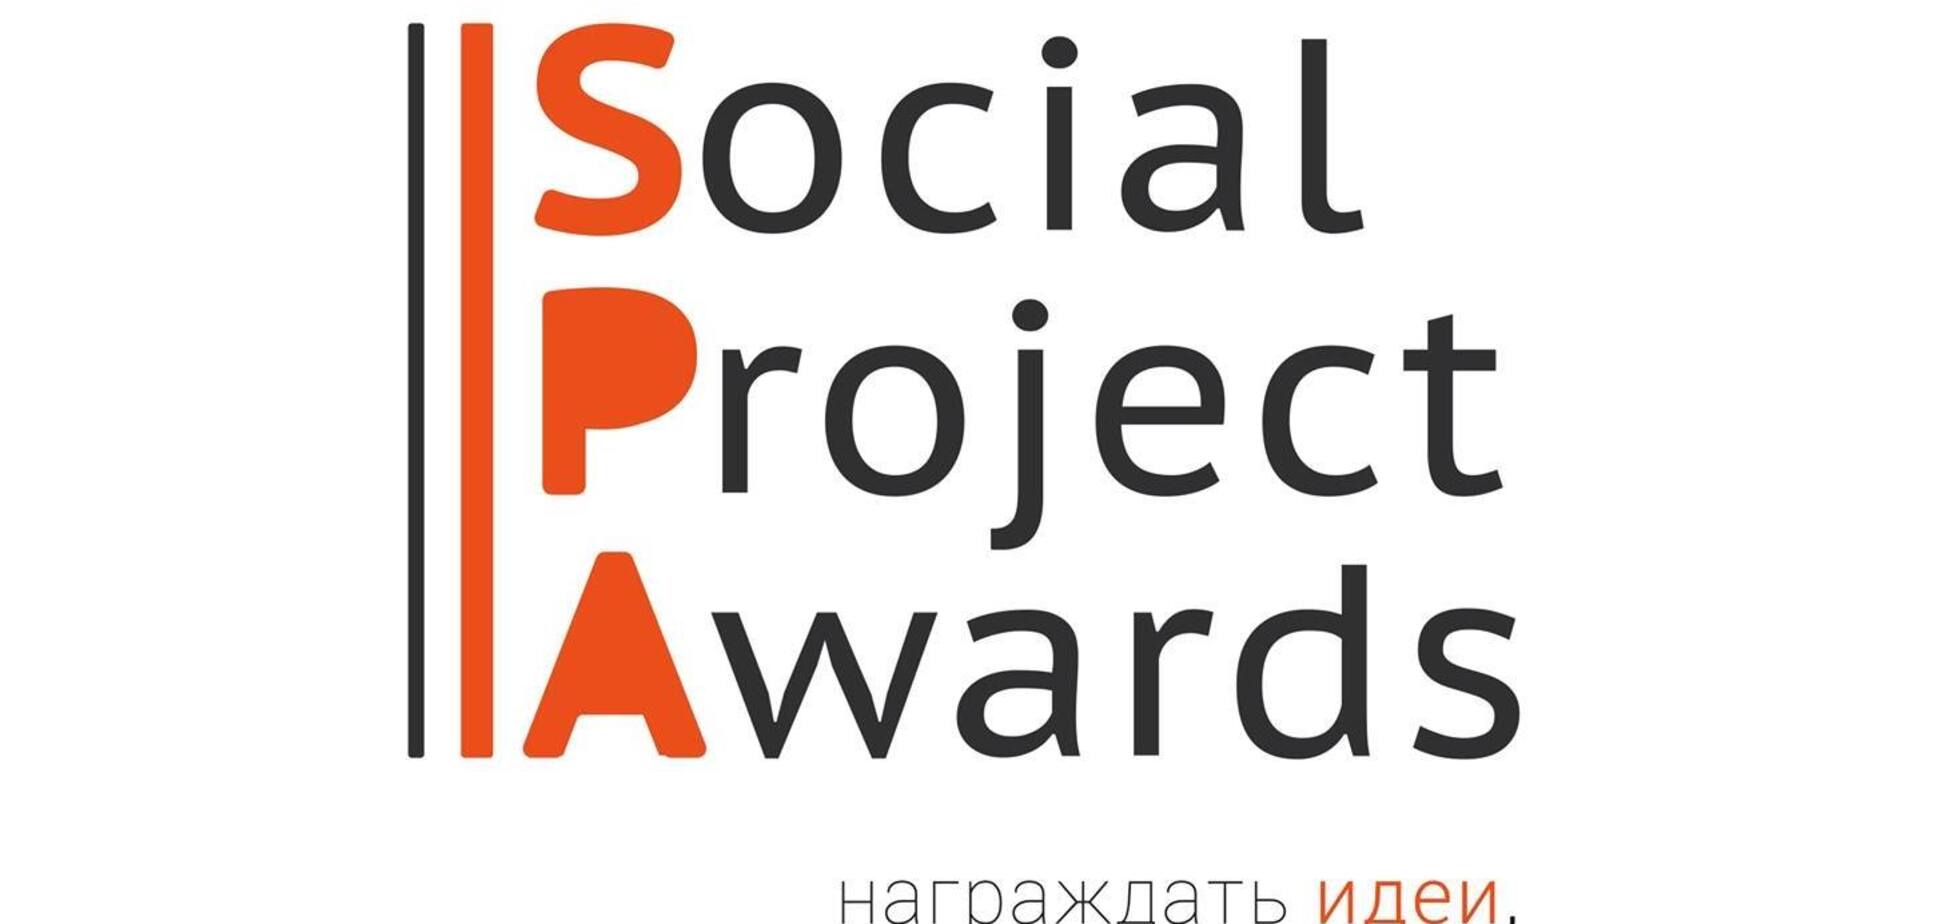 Оскар социальных проектов состоится в декабре в Одессе